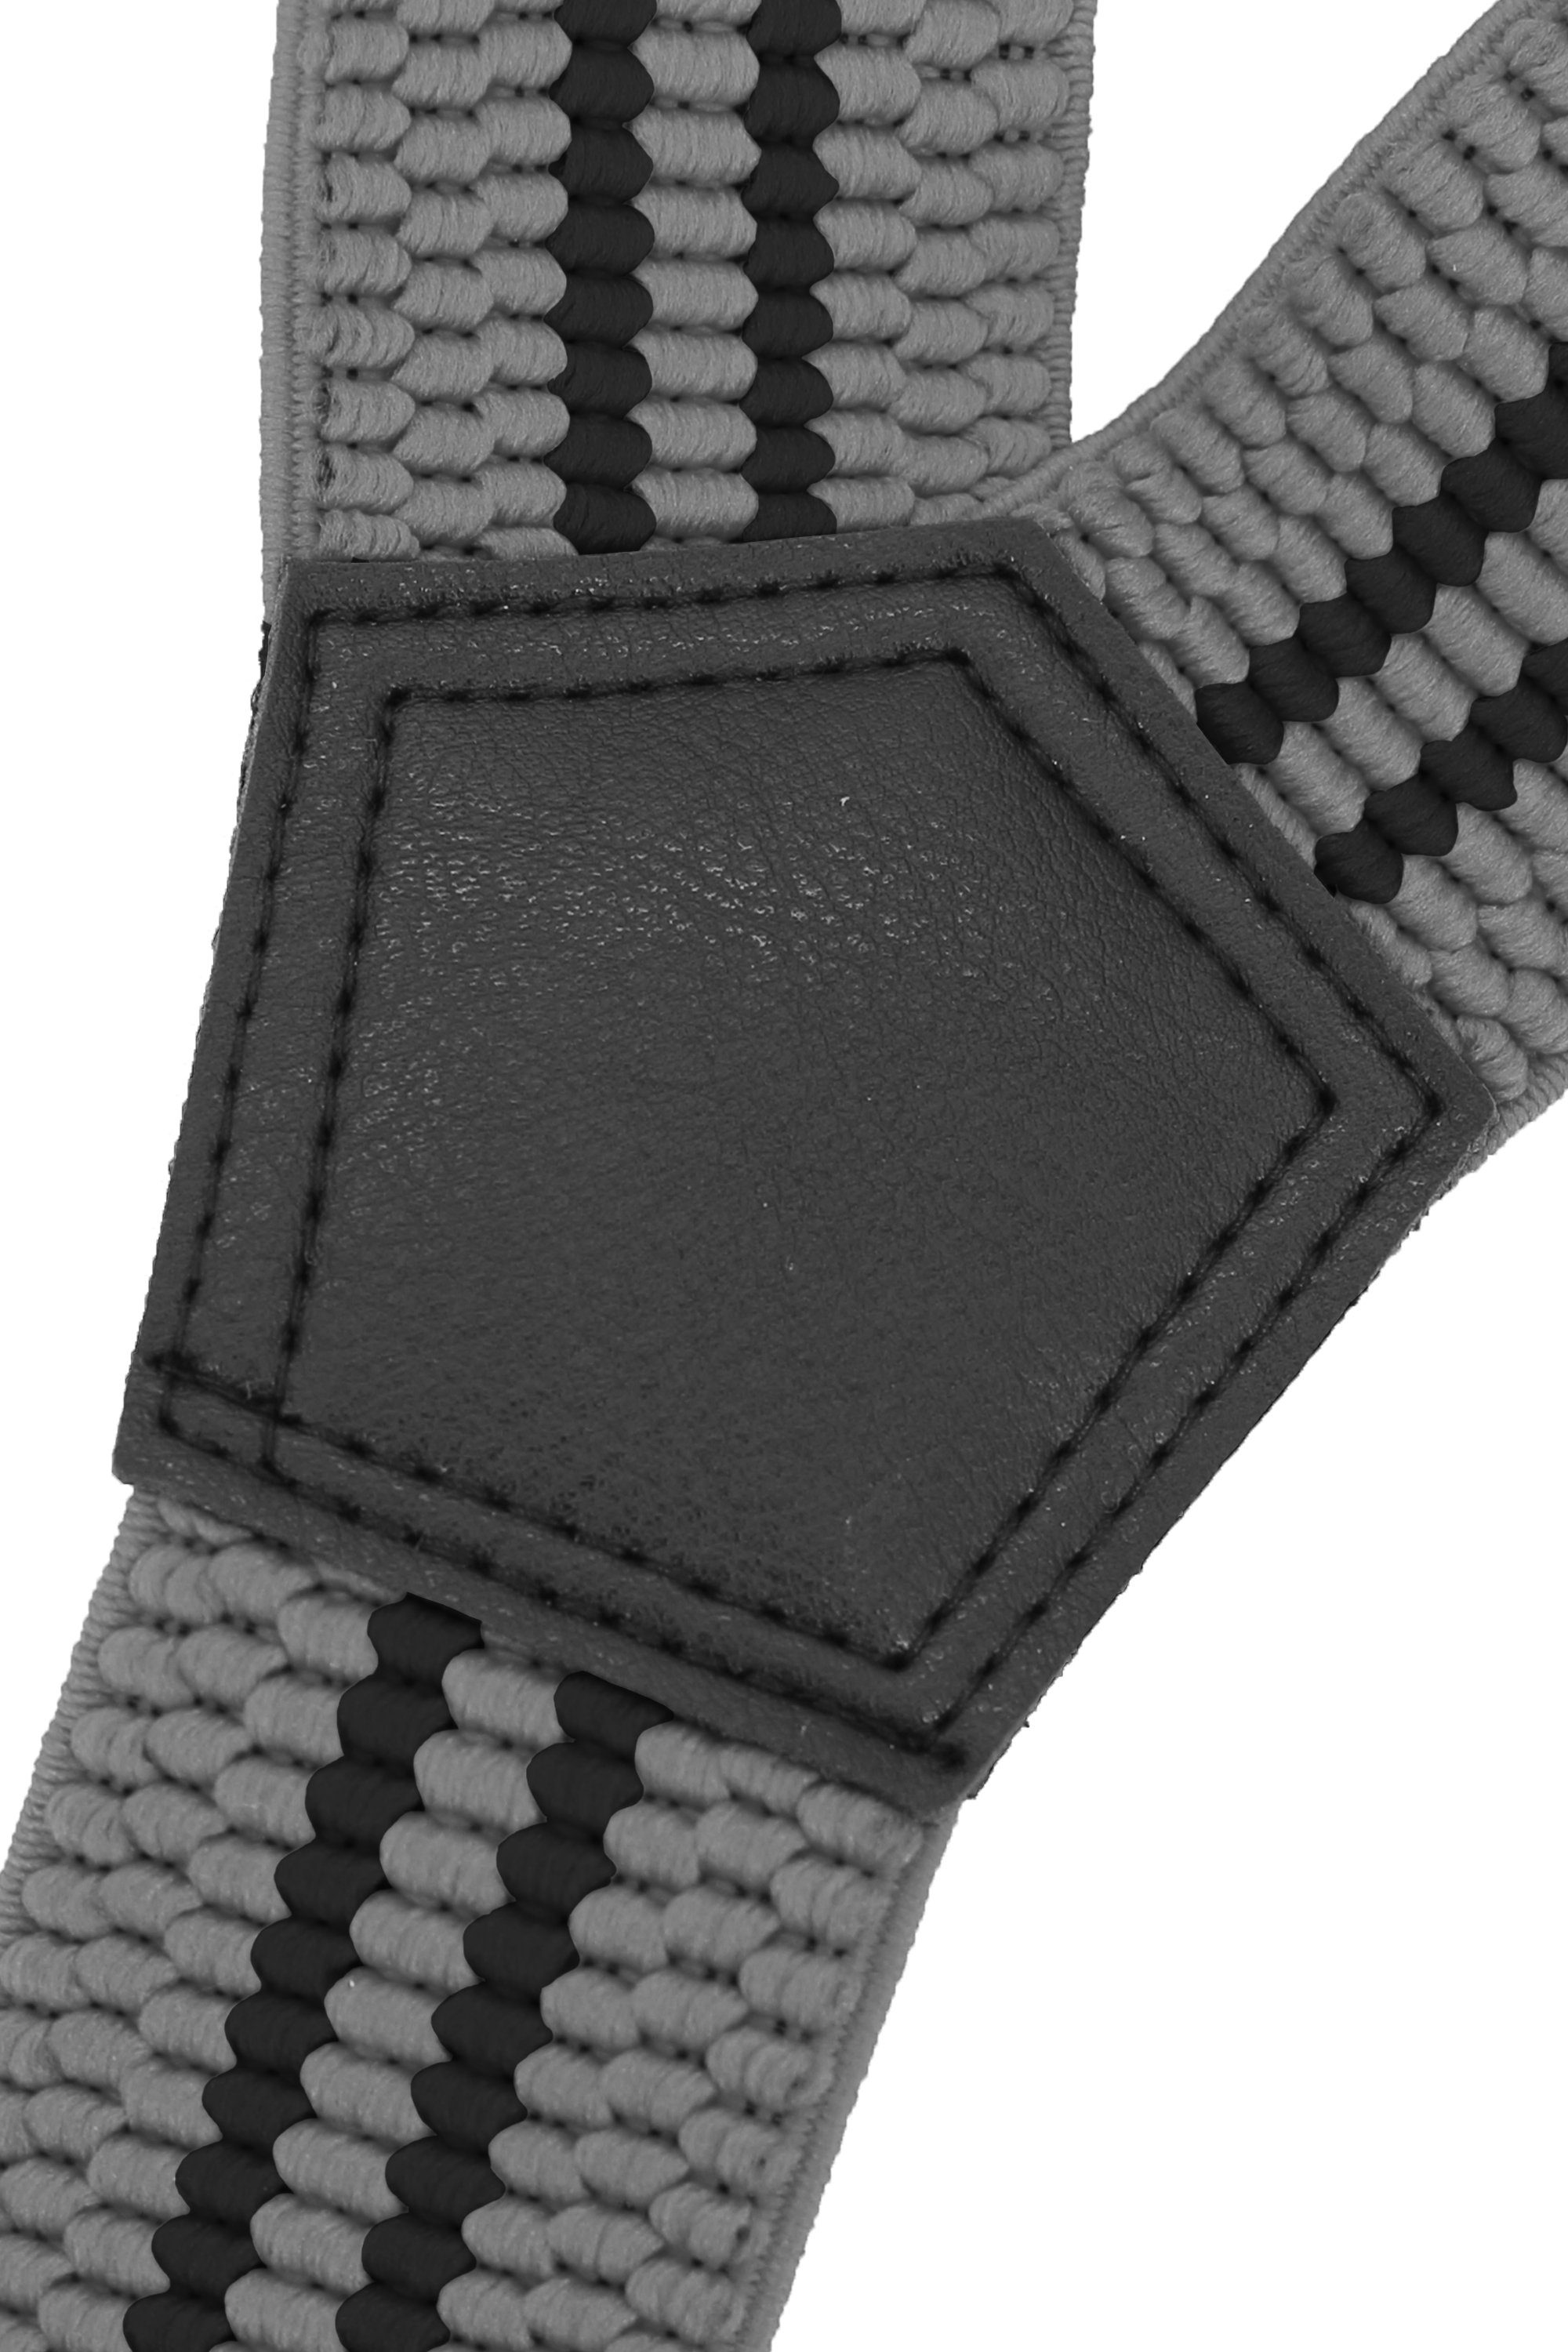 extra Streifen Streifen) Farini schwarzen Grau (schwarze Clipverschluss, Grau starken verstellbar Breites Hosenträger Y-Design mit Fabio mit 4cm